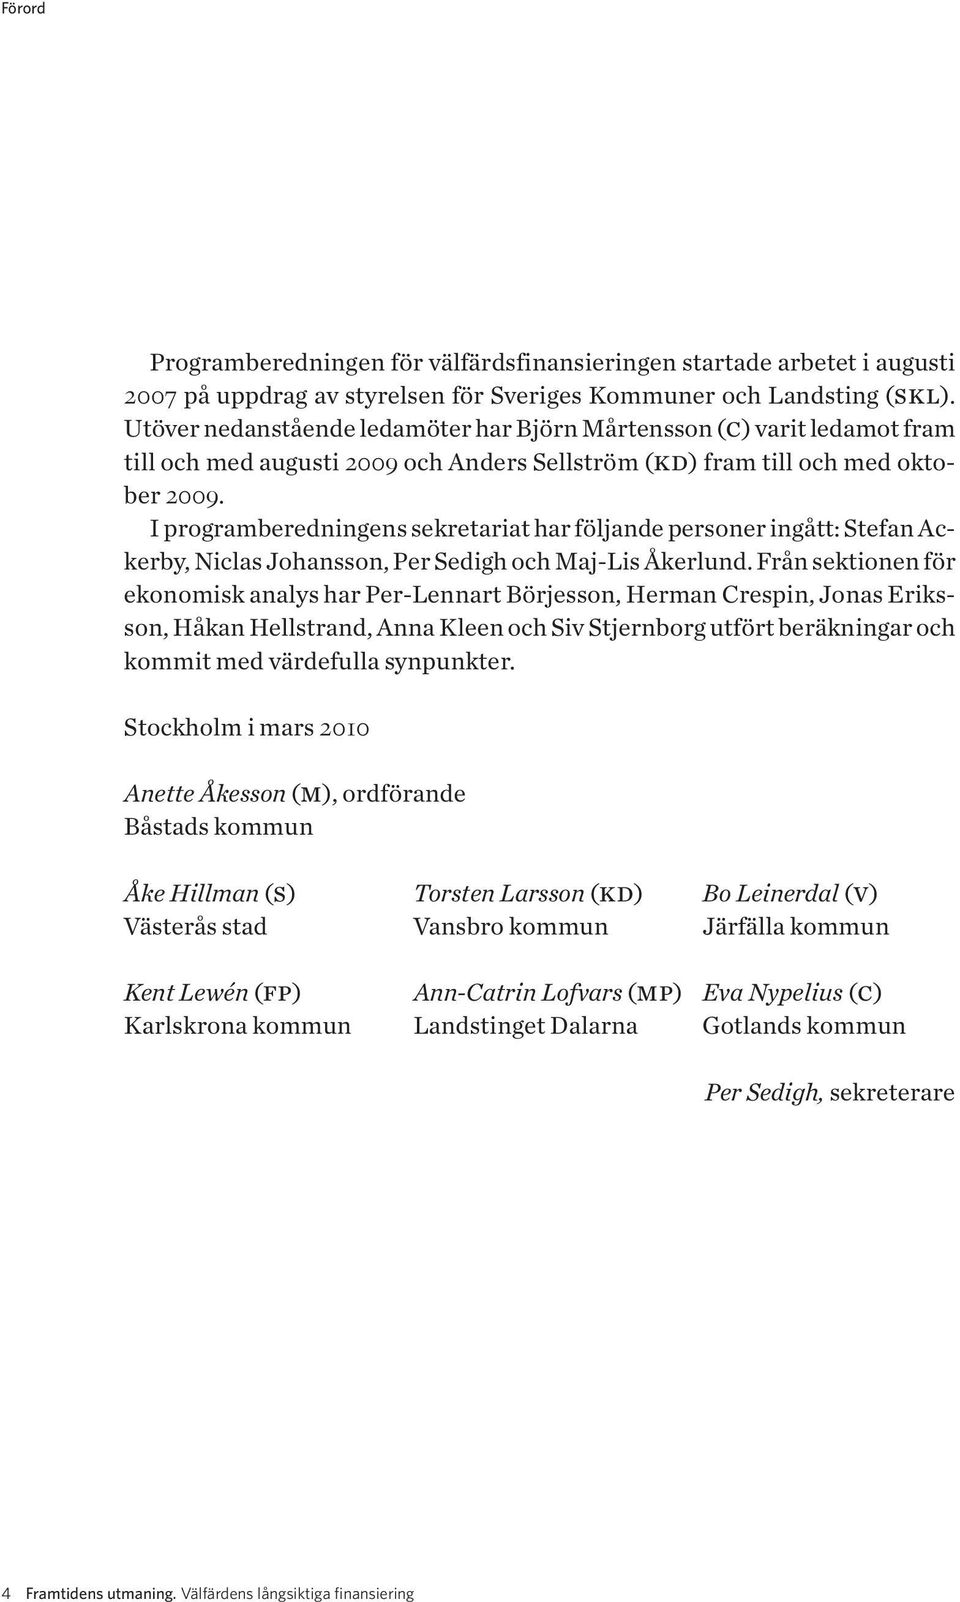 I programberedningens sekretariat har följande personer ingått: Stefan Ackerby, Niclas Johansson, Per Sedigh och Maj-Lis Åkerlund.